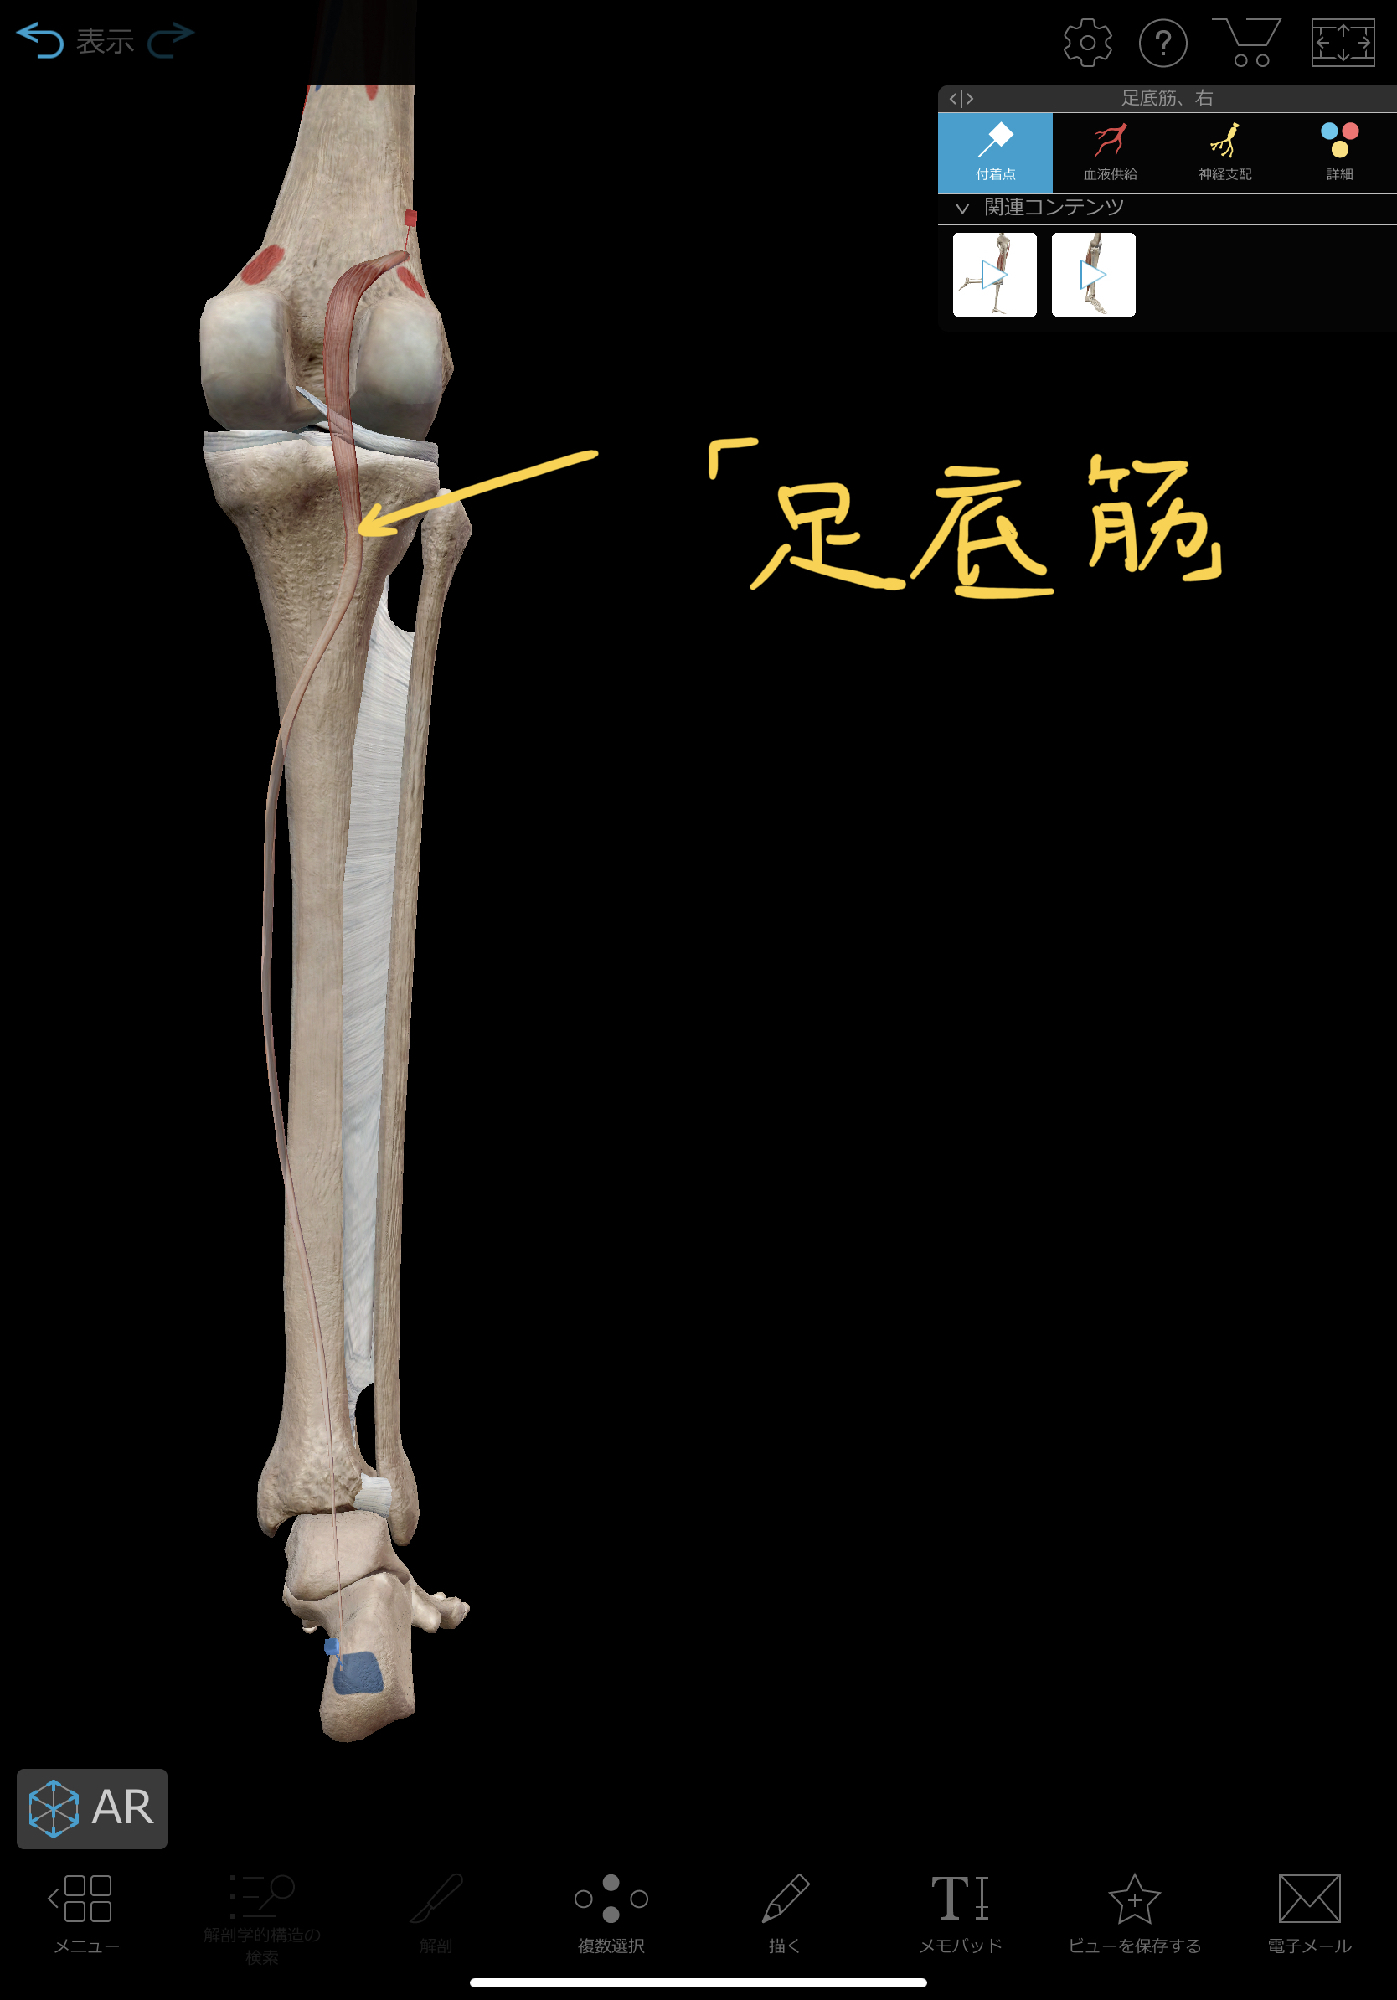 膝裏の痛みを改善する 足底筋リリース 理学療法士 安部元隆 マイベストプロ大分